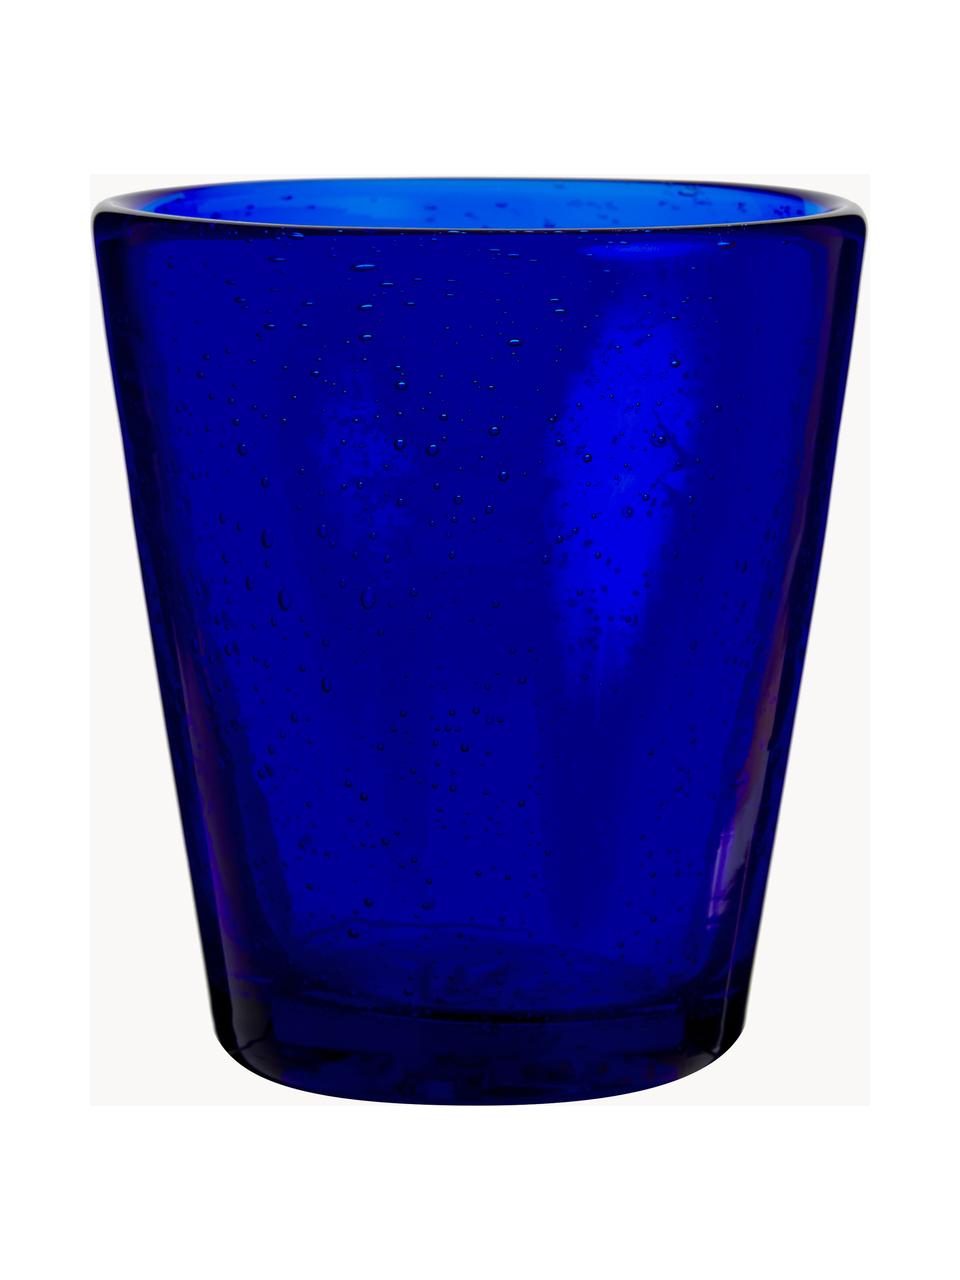 Wassergläser Baita mit Lufteinschlüssen, 6er-Set, Glas, Blau-, Türkis- und Grautöne, transparent, Ø 9 x H 10 cm, 330 ml